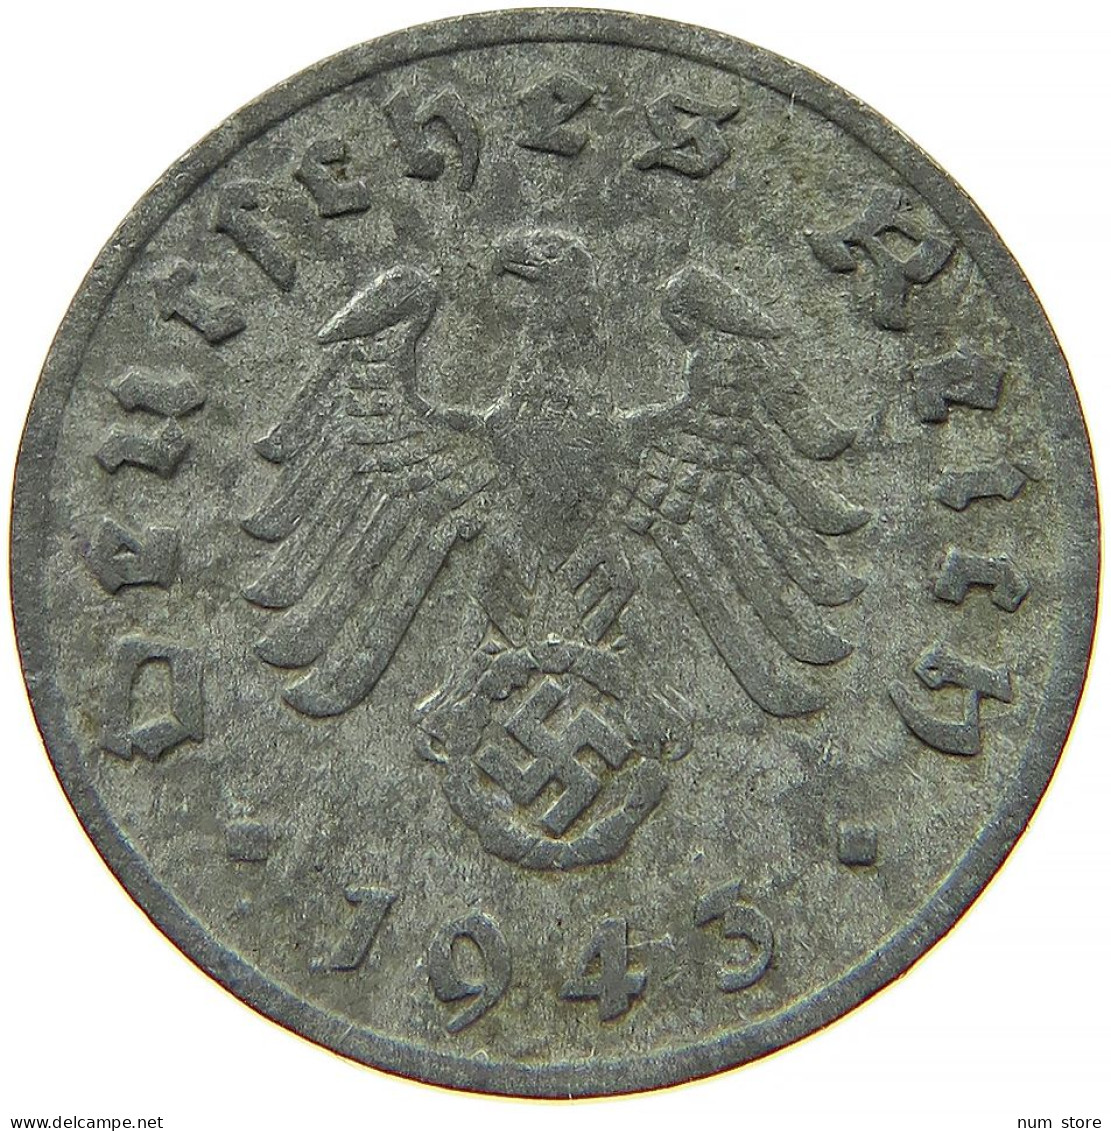 GERMANY 1 REICHSPFENNIG 1942 F #s091 1079 - 1 Reichspfennig